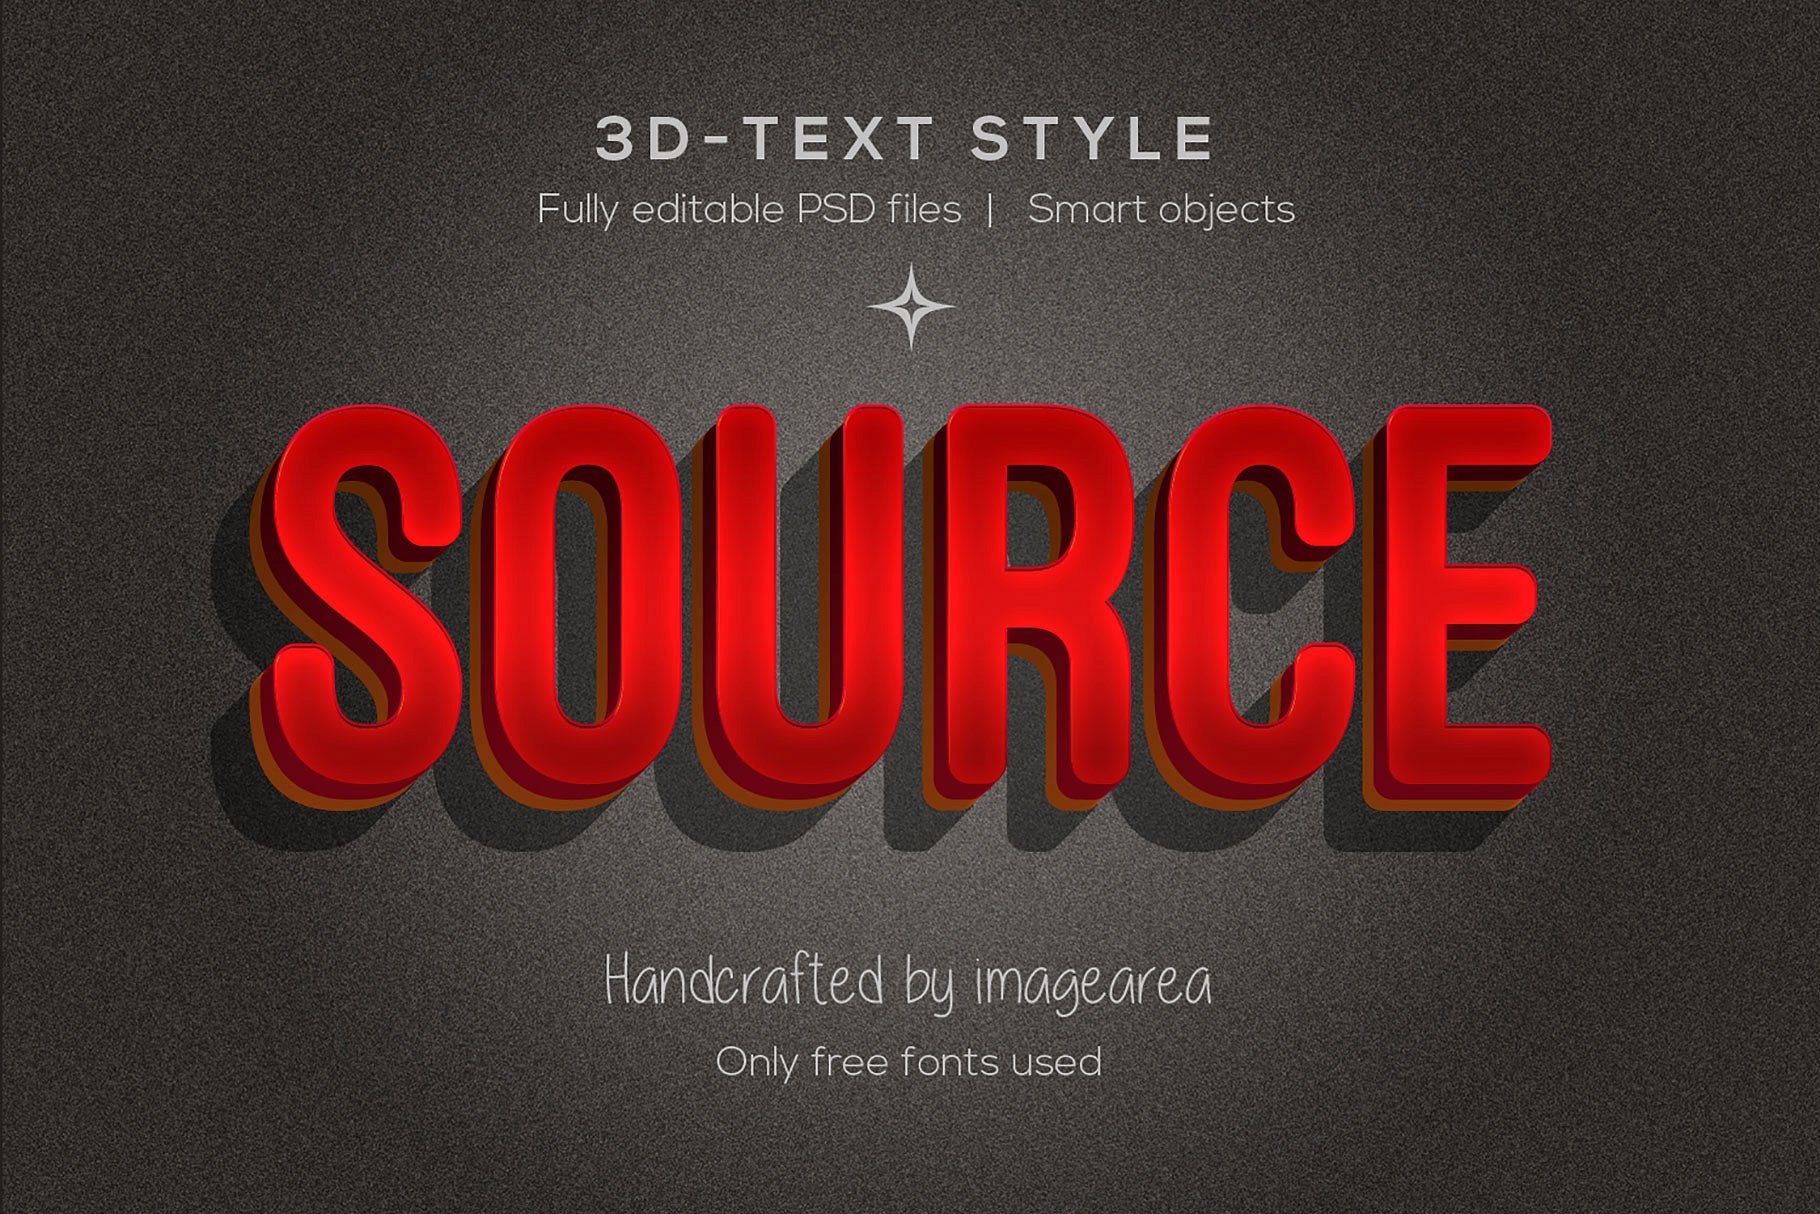 创意3D文本图层样式 Amazing 3D Text Styles插图(6)